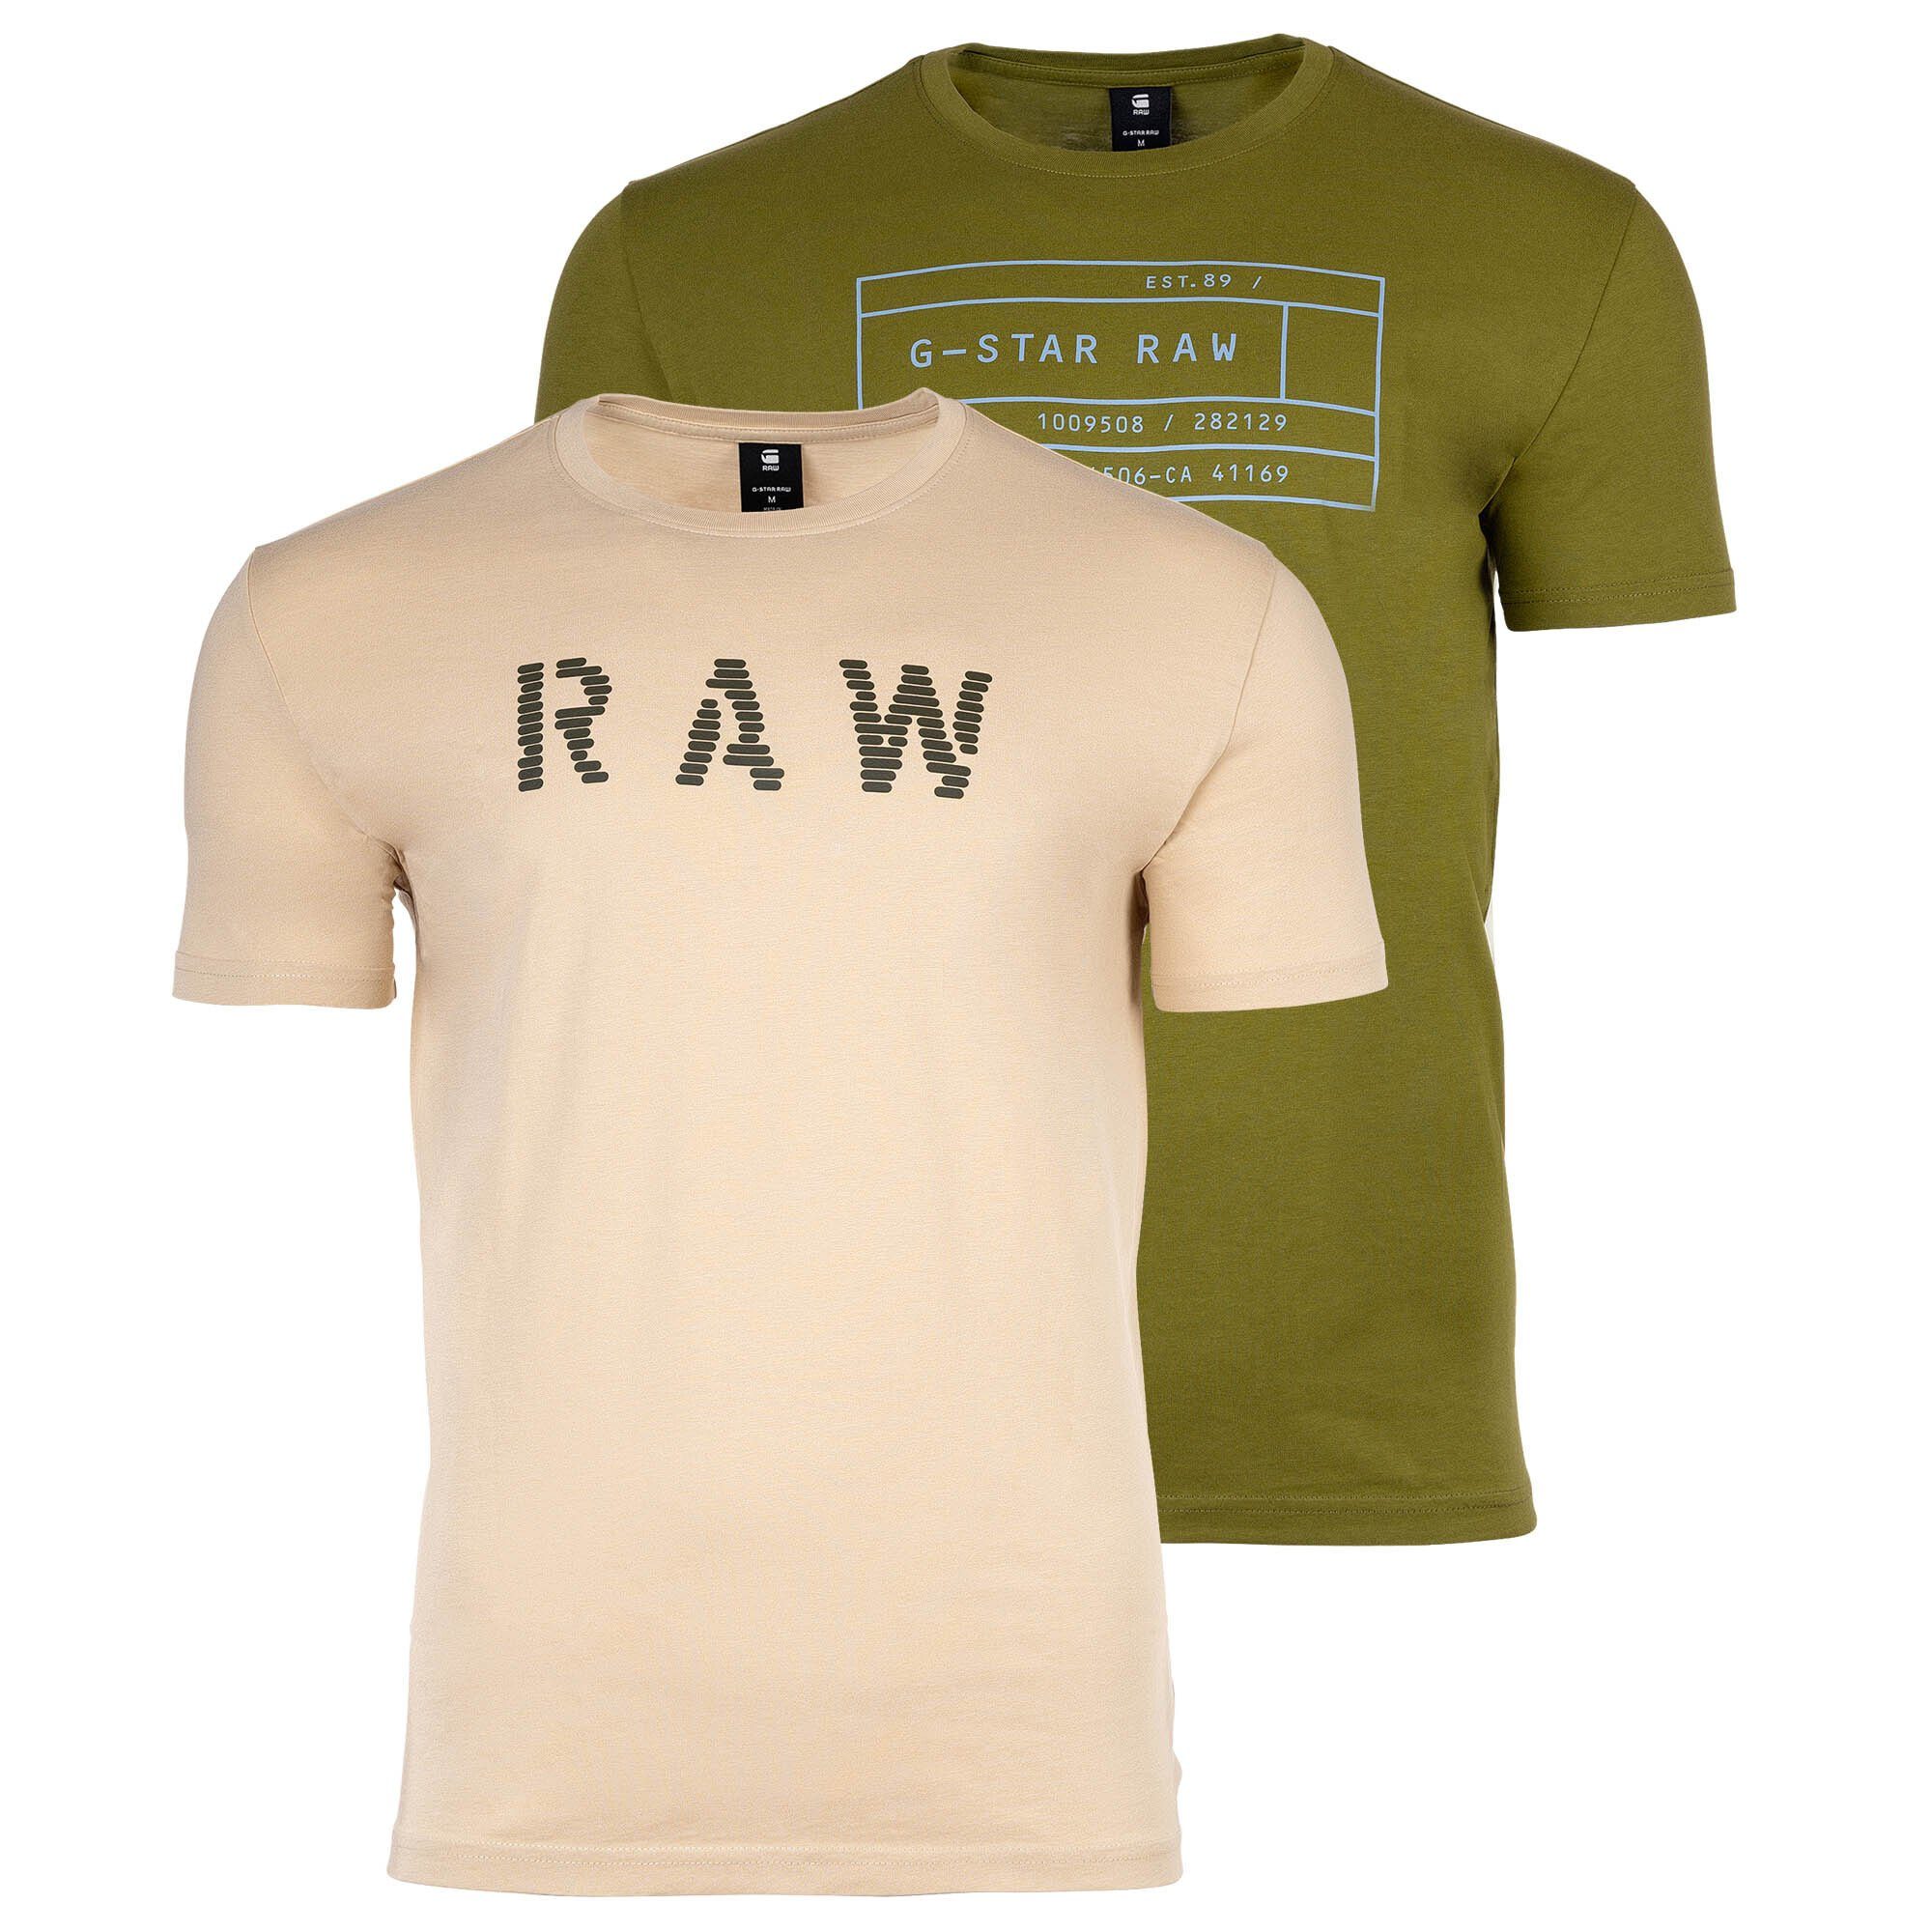 G-Star RAW T-Shirt Herren T-Shirt, 2er Pack - Graphic, Rundhals Grün/Beige